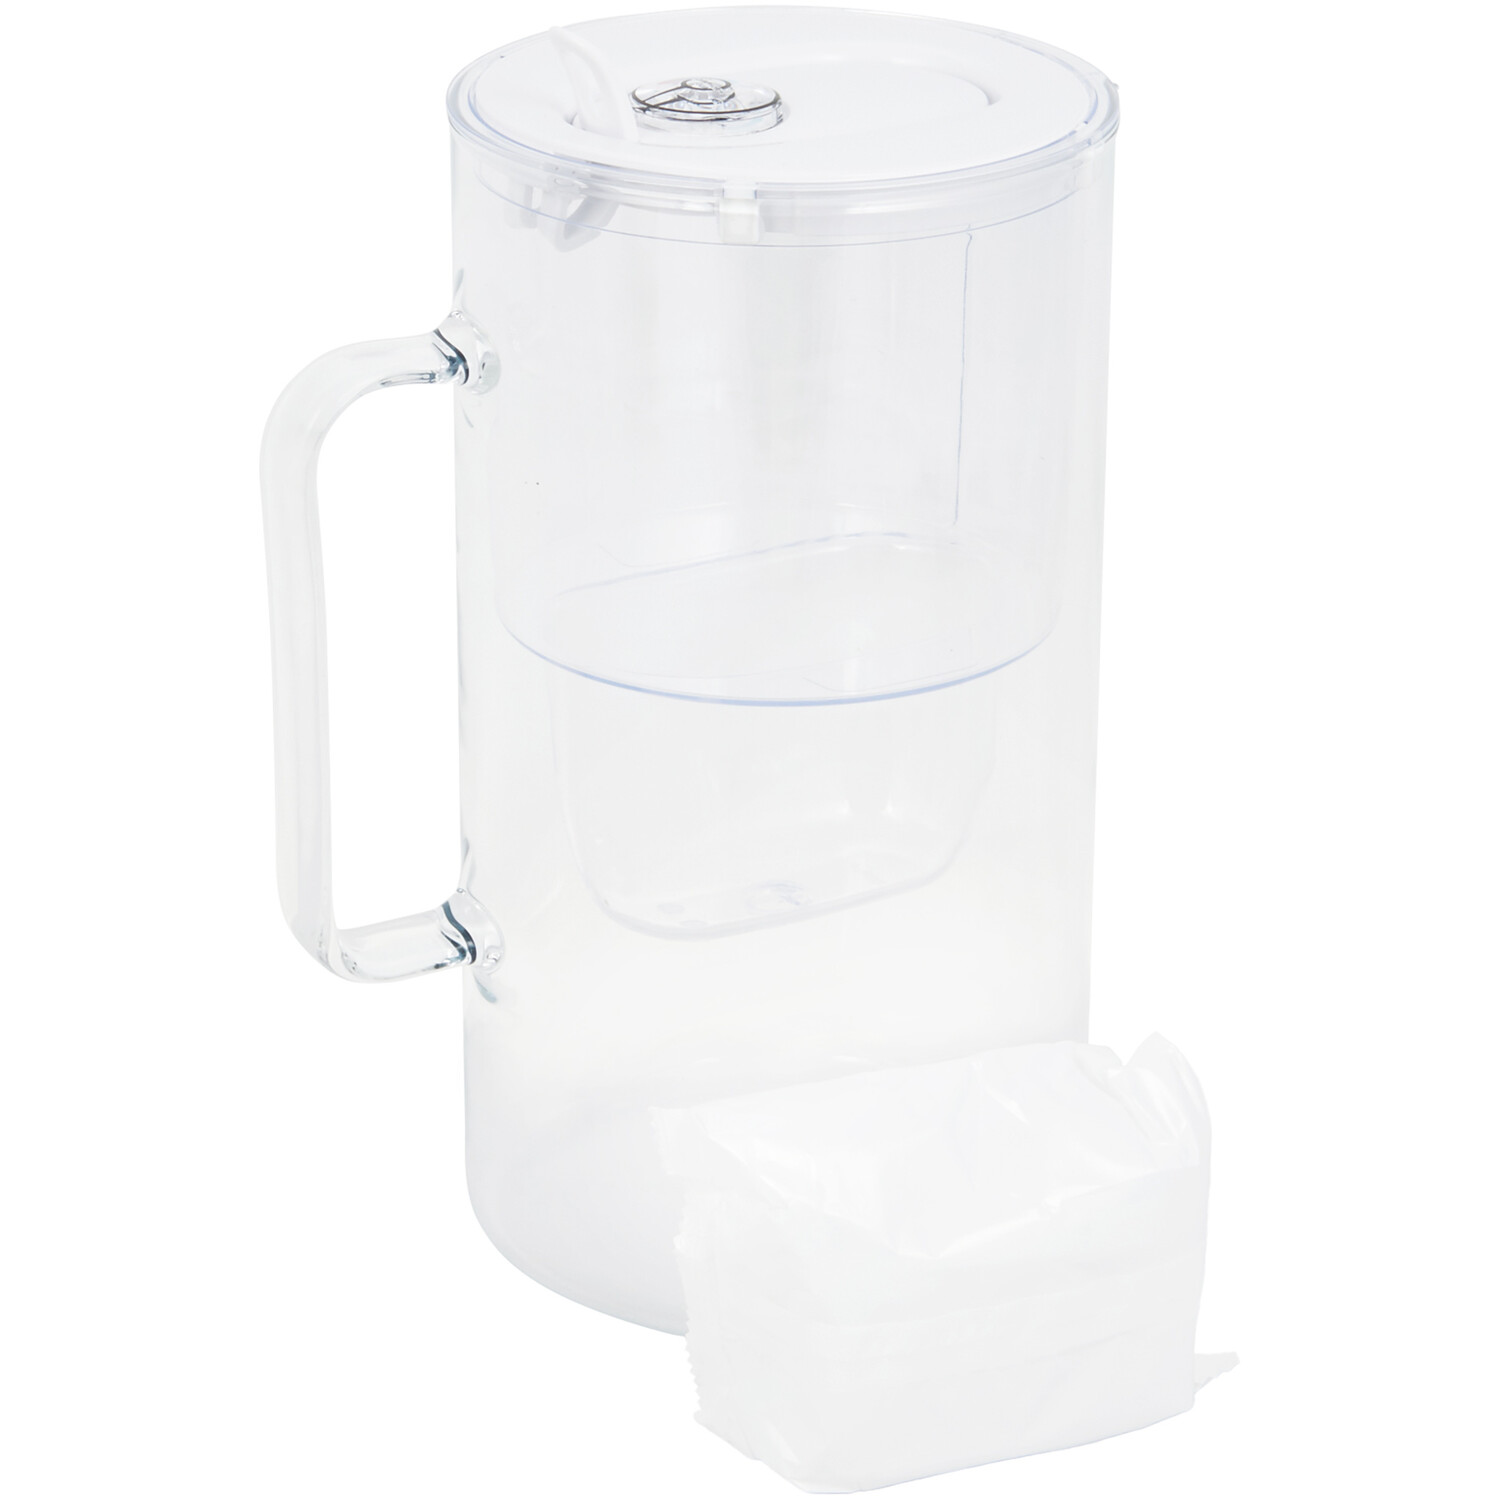 Aquaphor Glass 2.5l Water Filter Jug - White Image 6